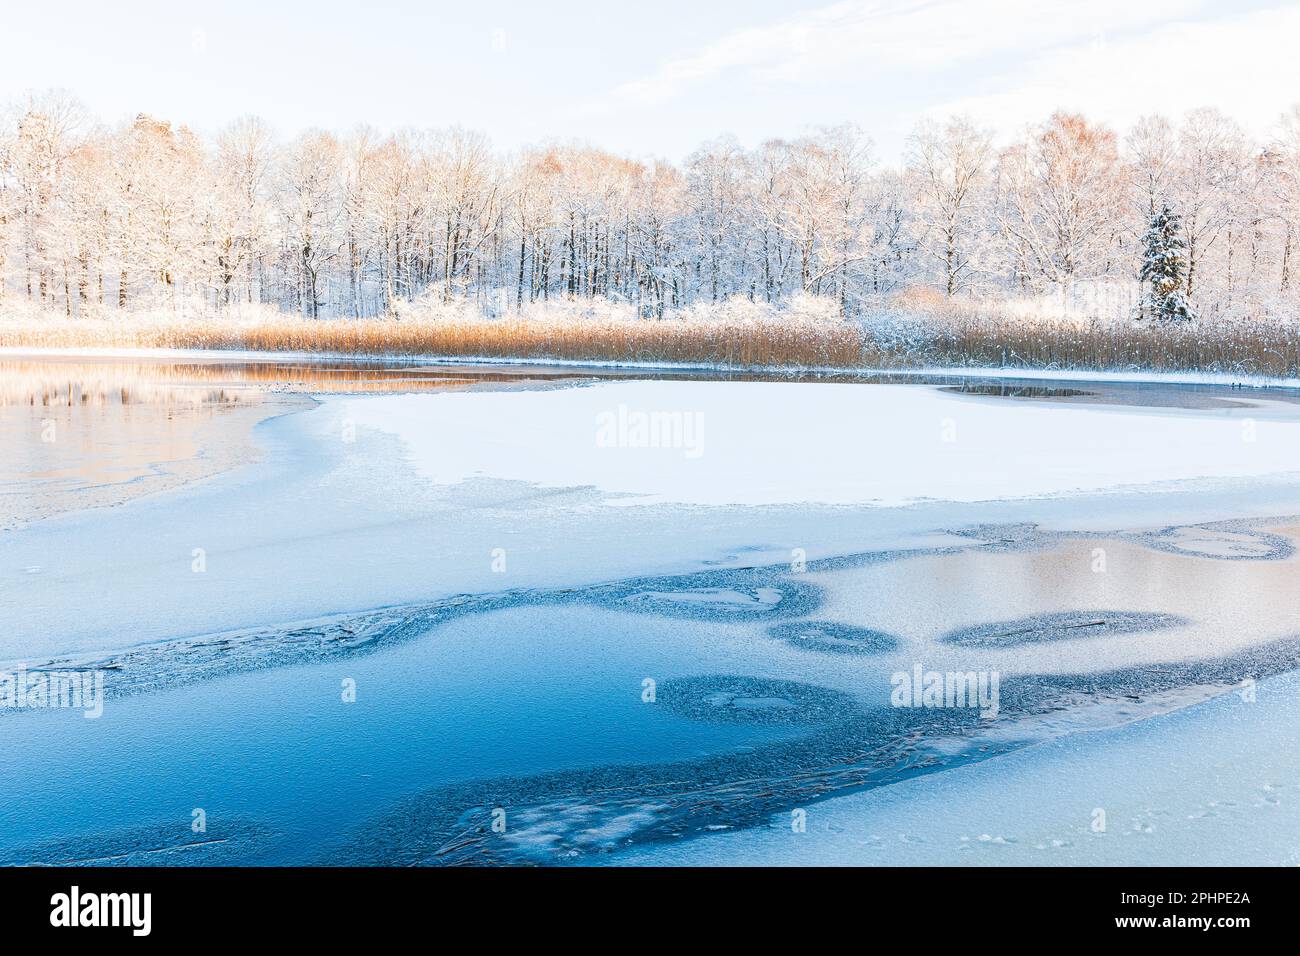 Eine ruhige Winterszene eines gefrorenen Flusses in Schweden, bedeckt von Schnee und Frost. Eine atemberaubende Erinnerung an die Schönheit der Natur bei kalten Temperaturen. Stockfoto